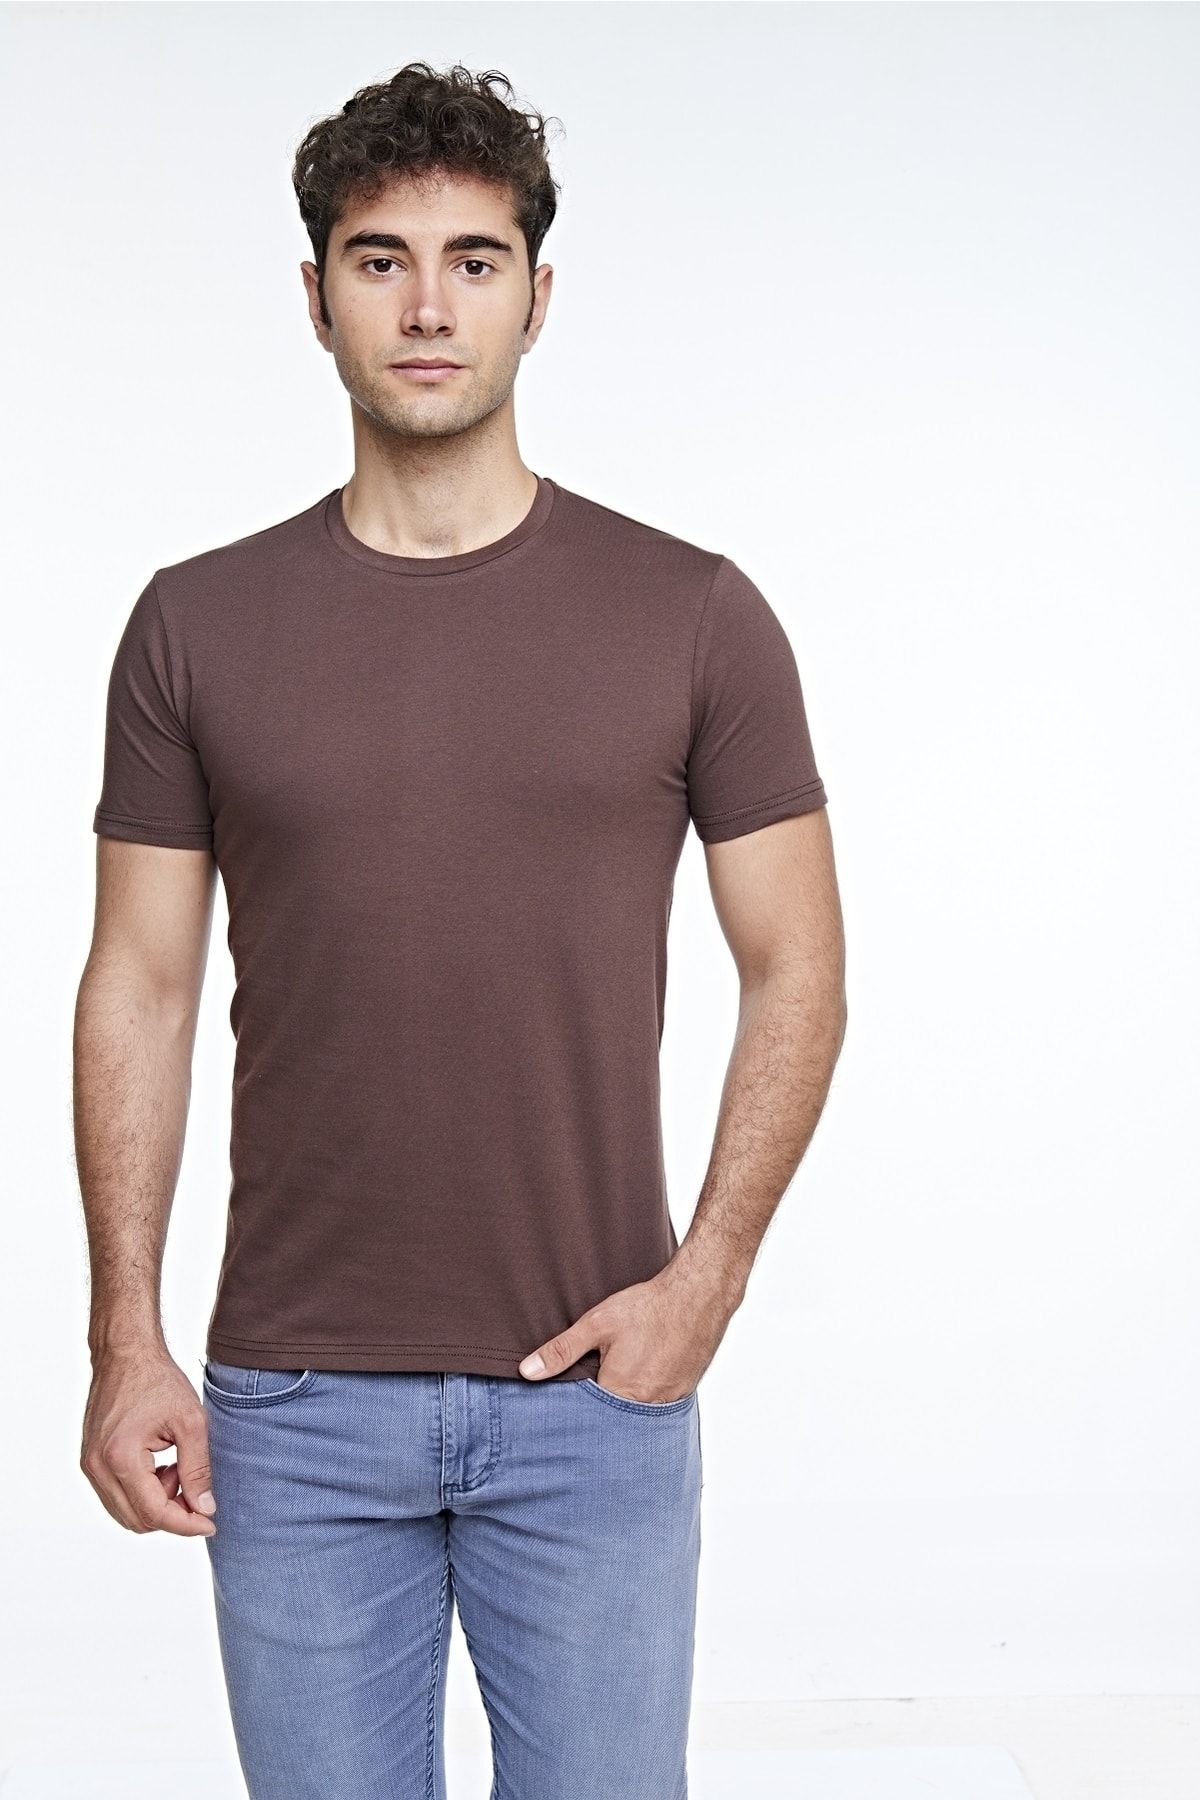 fsm1453 Erkek Pamuklu Kısa Kollu Renkli T-shirt - 421